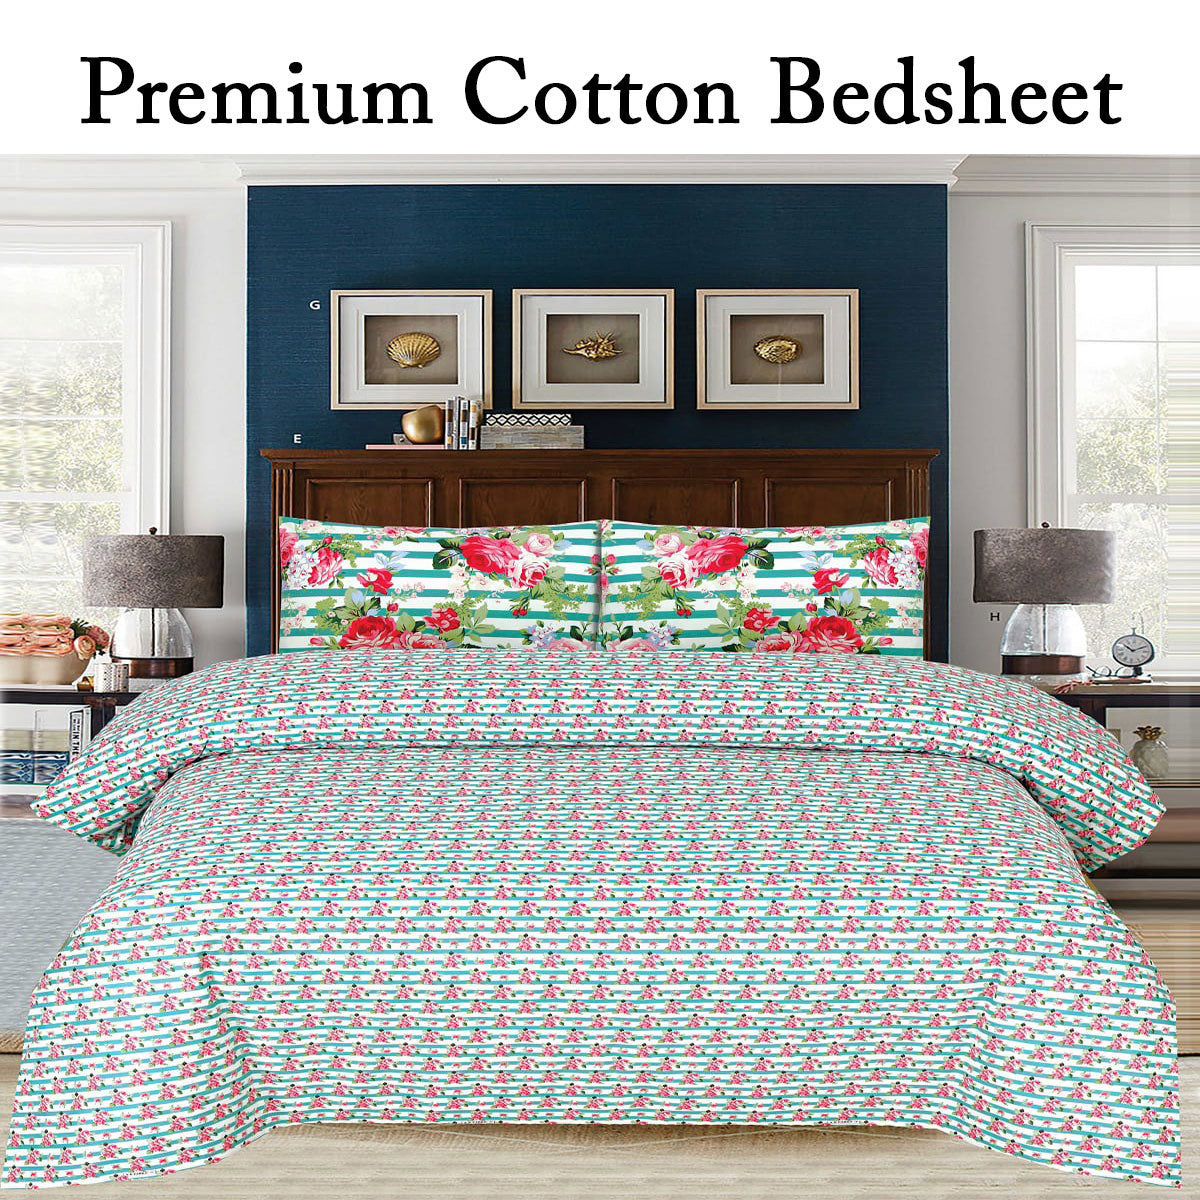 PREMIUM COTTON BED SHEET - Hangree